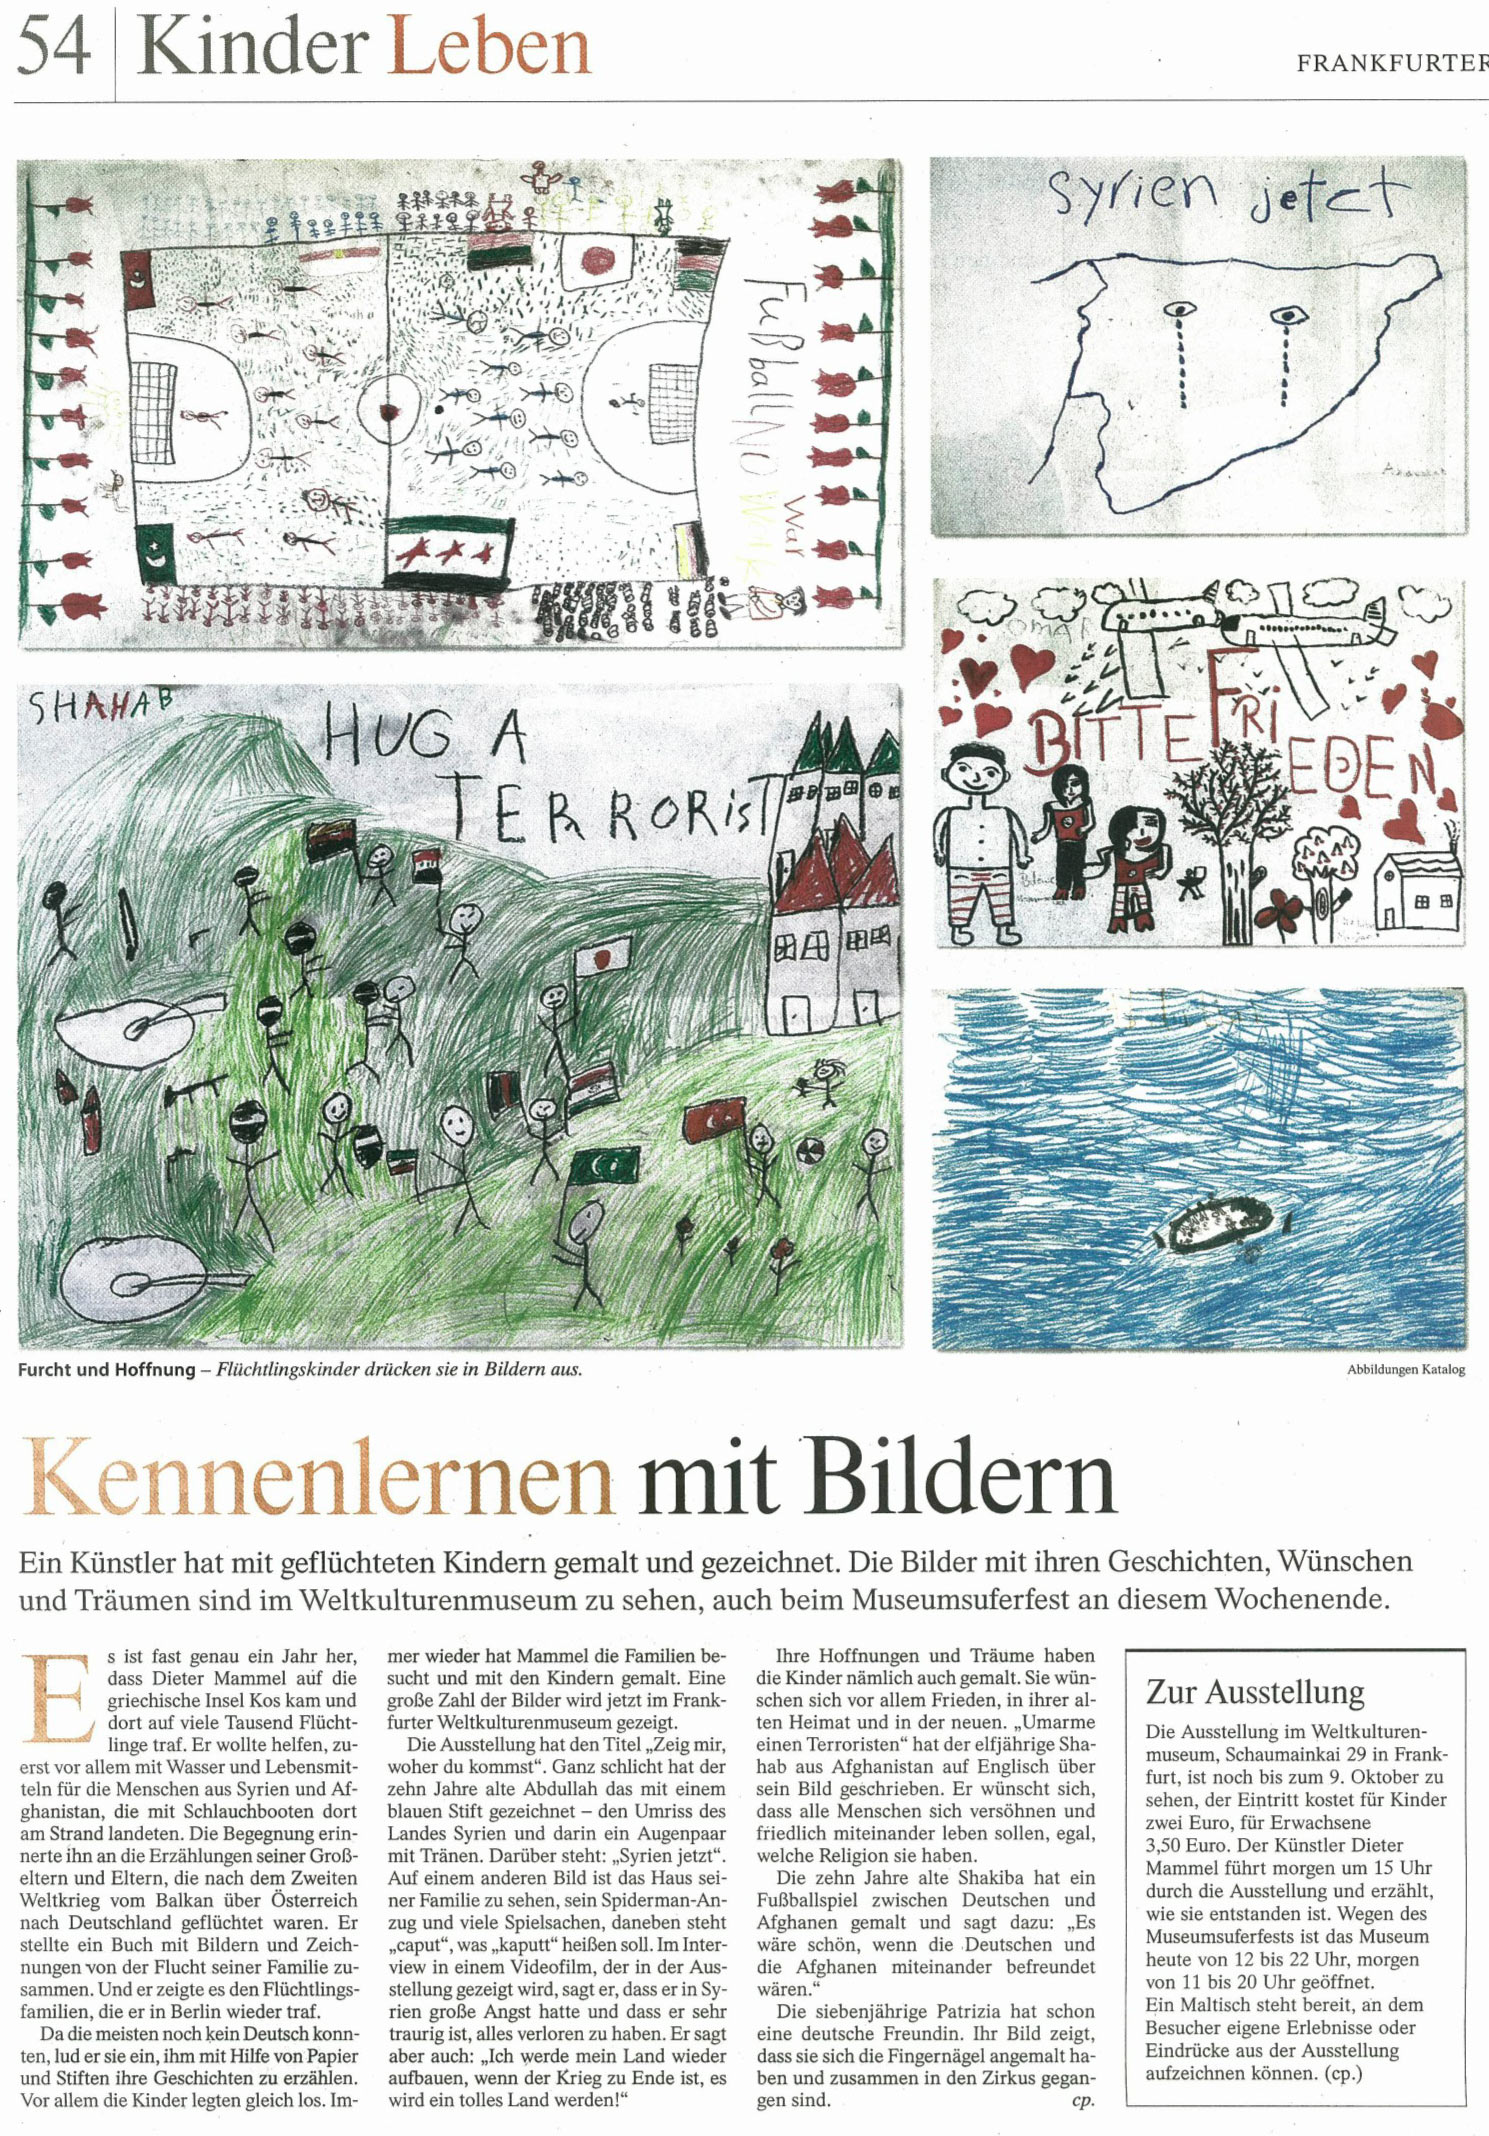 Frankfurter Allgemeine Zeitung, 27.August 2016